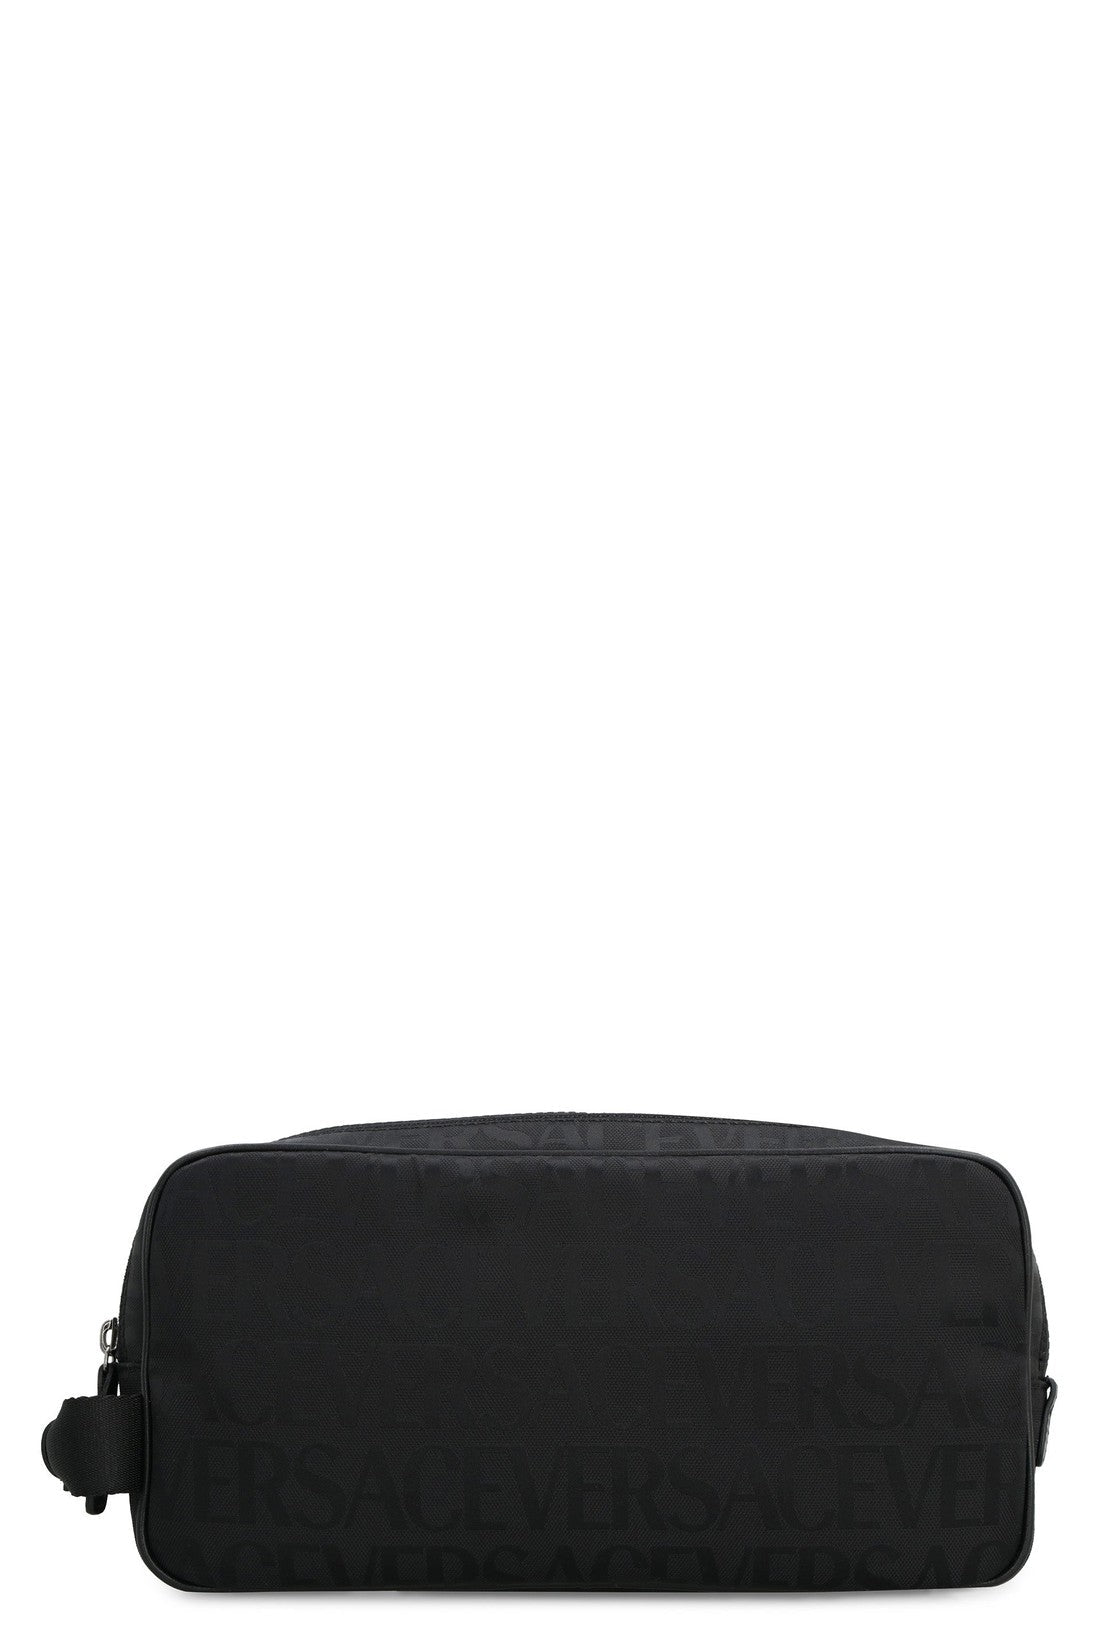 Versace-OUTLET-SALE-Nylon wash bag-ARCHIVIST